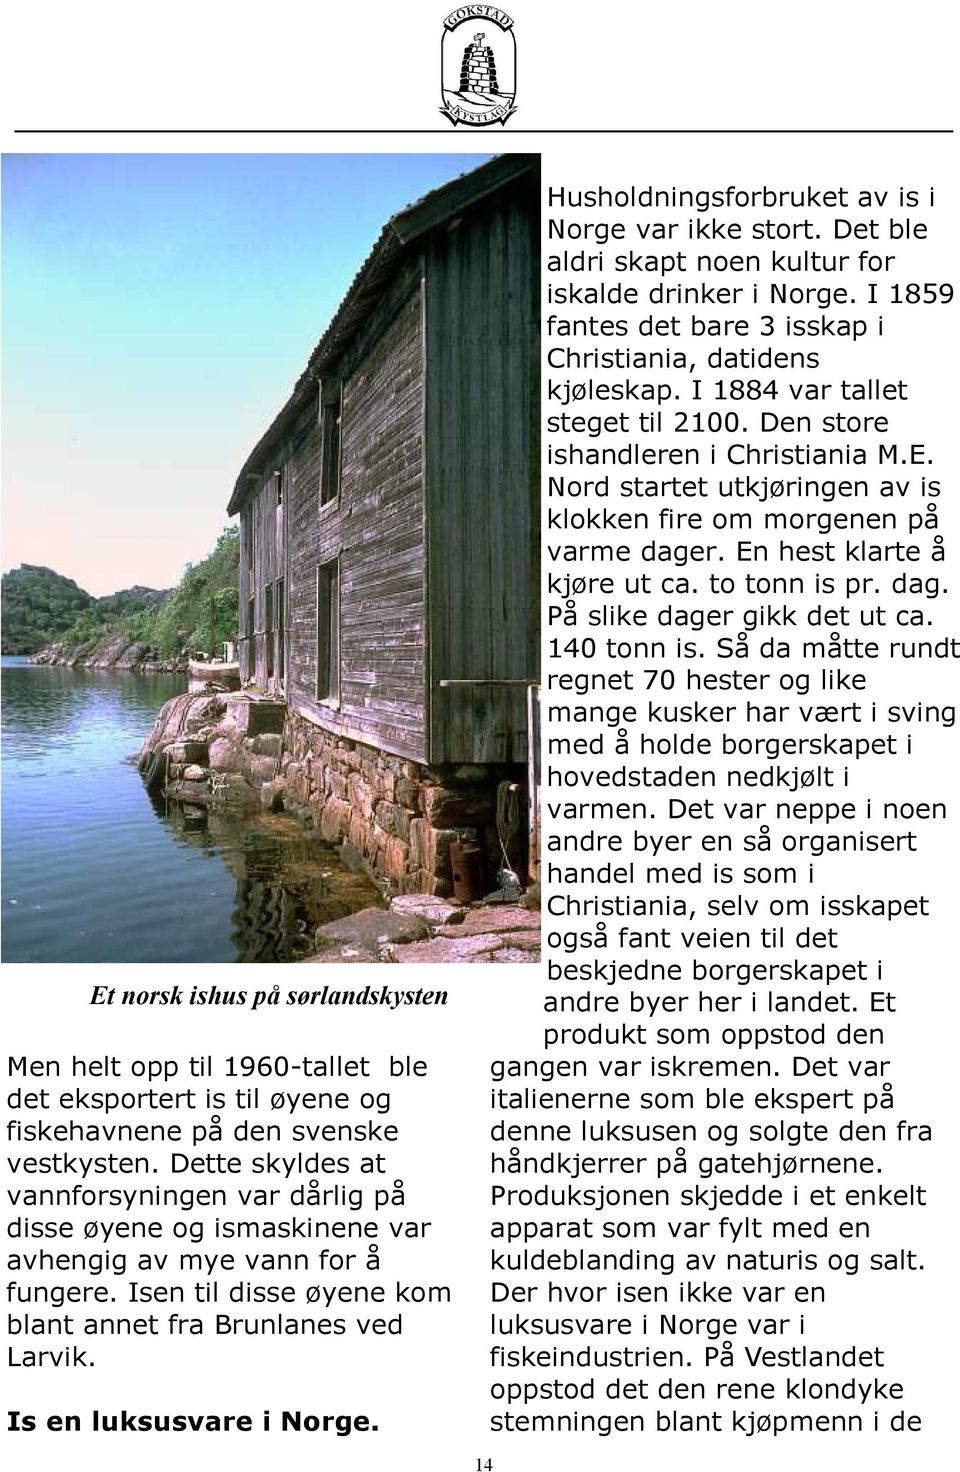 Is en luksusvare i Norge. Husholdningsforbruket av is i Norge var ikke stort. Det ble aldri skapt noen kultur for iskalde drinker i Norge.